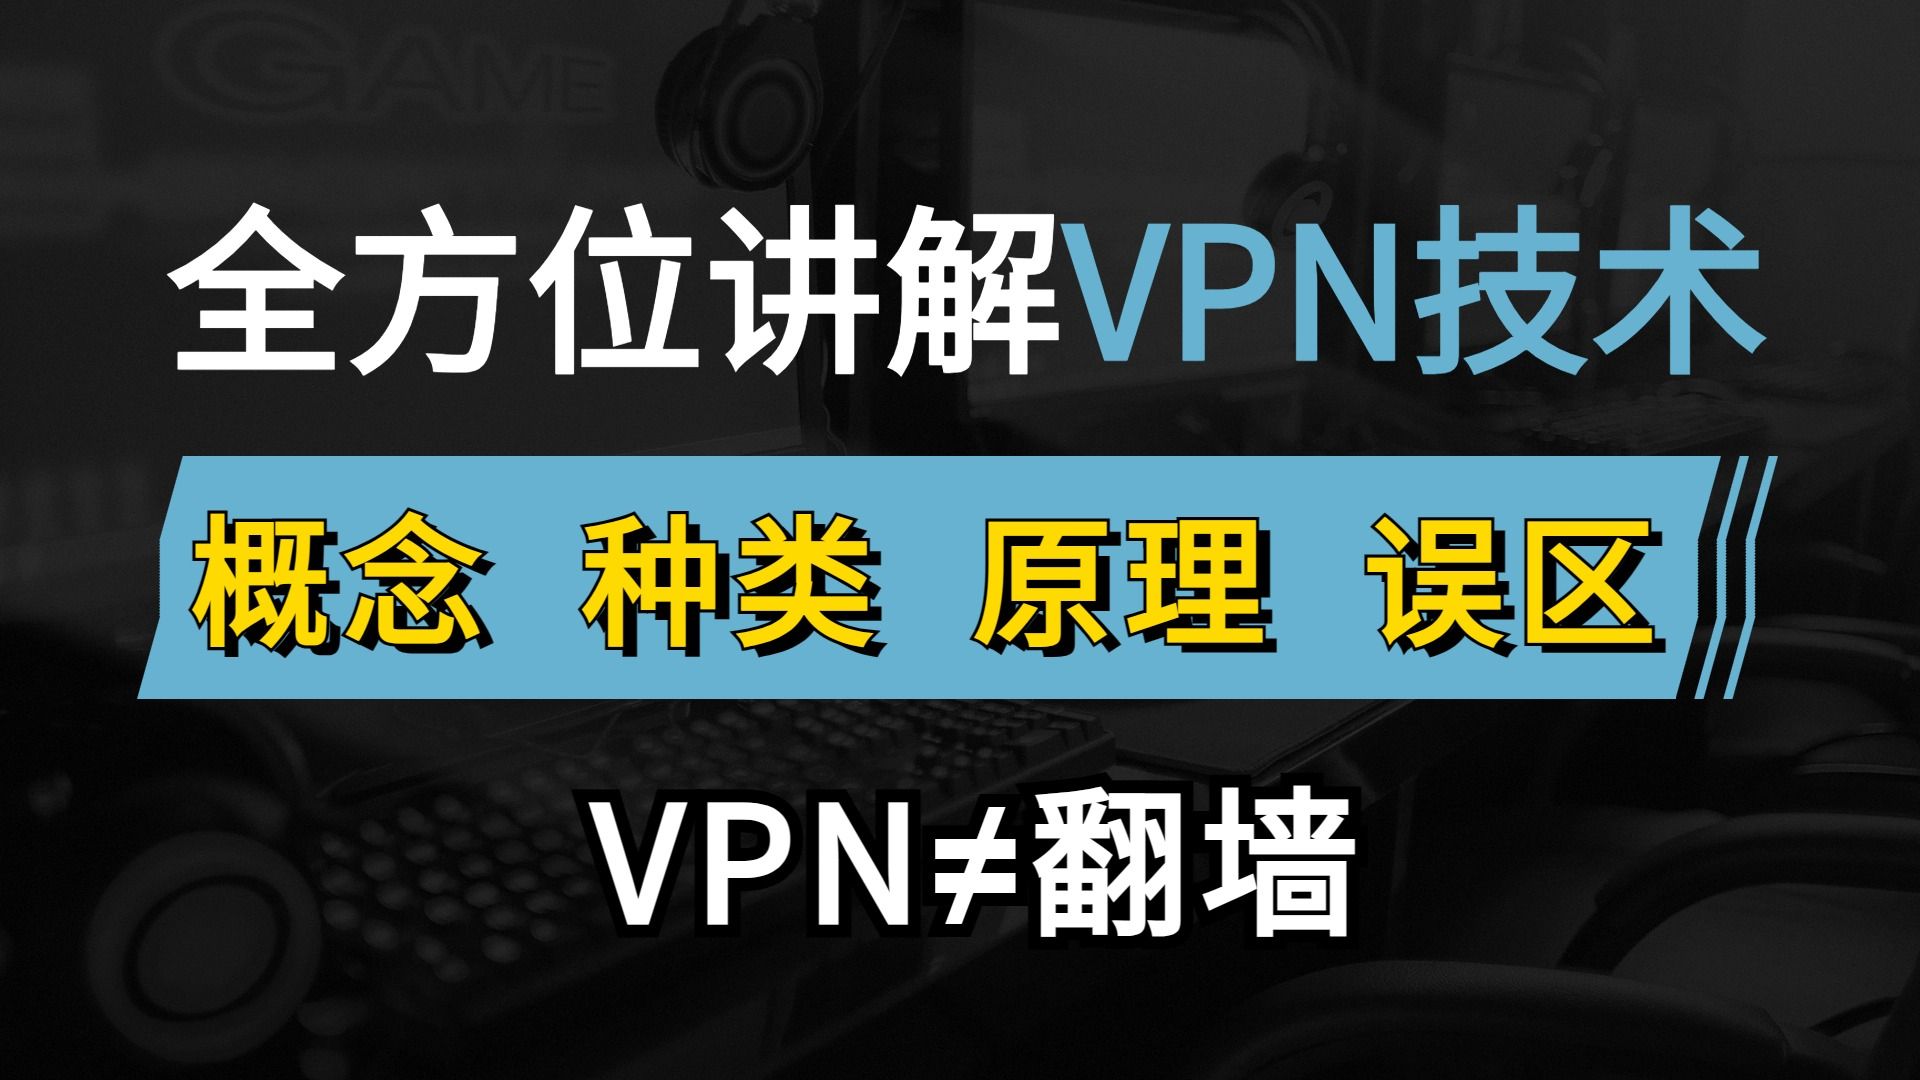 一个视频讲解VPN概念、种类、原理和误区，这才是正确的使用方式！